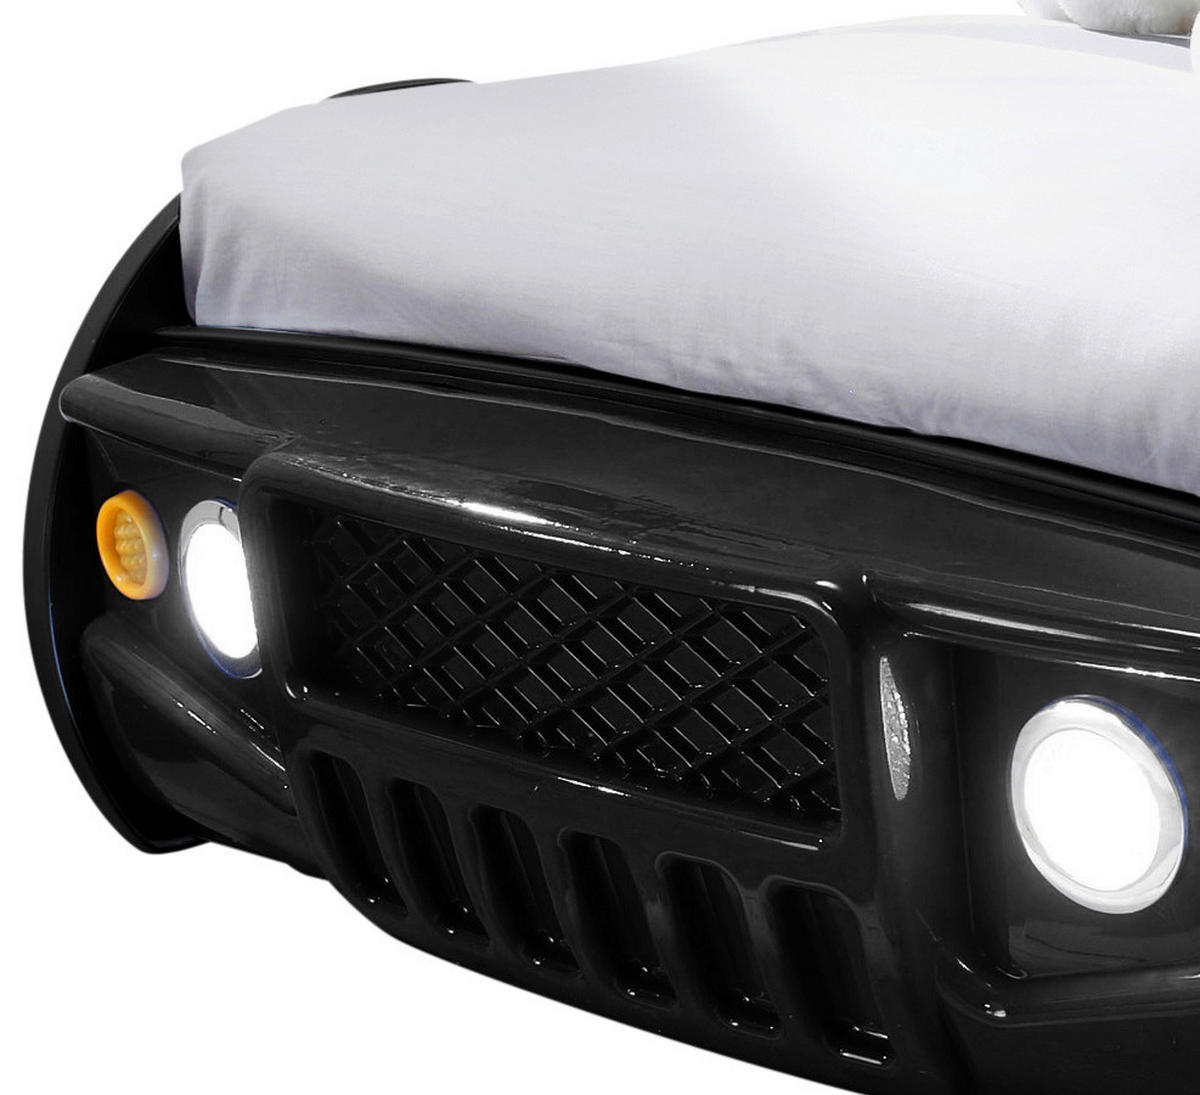 Autobett in Schwarz mit Beleuchtung